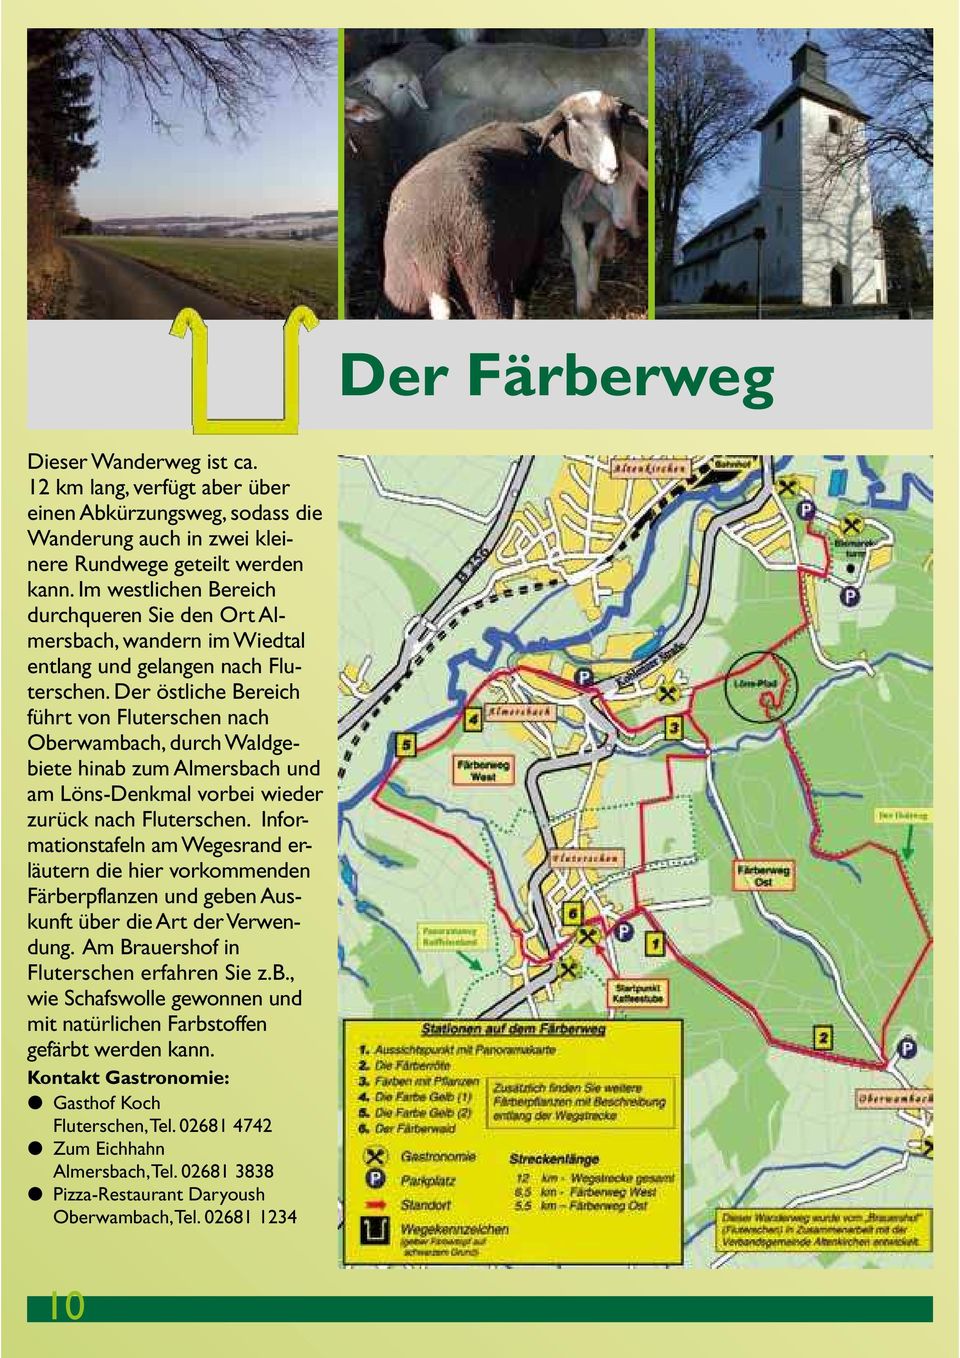 Der östliche Bereich führt von Fluterschen nach Oberwambach, durch Waldgebiete hinab zum Almersbach und am Löns-Denkmal vorbei wieder zurück nach Fluterschen.